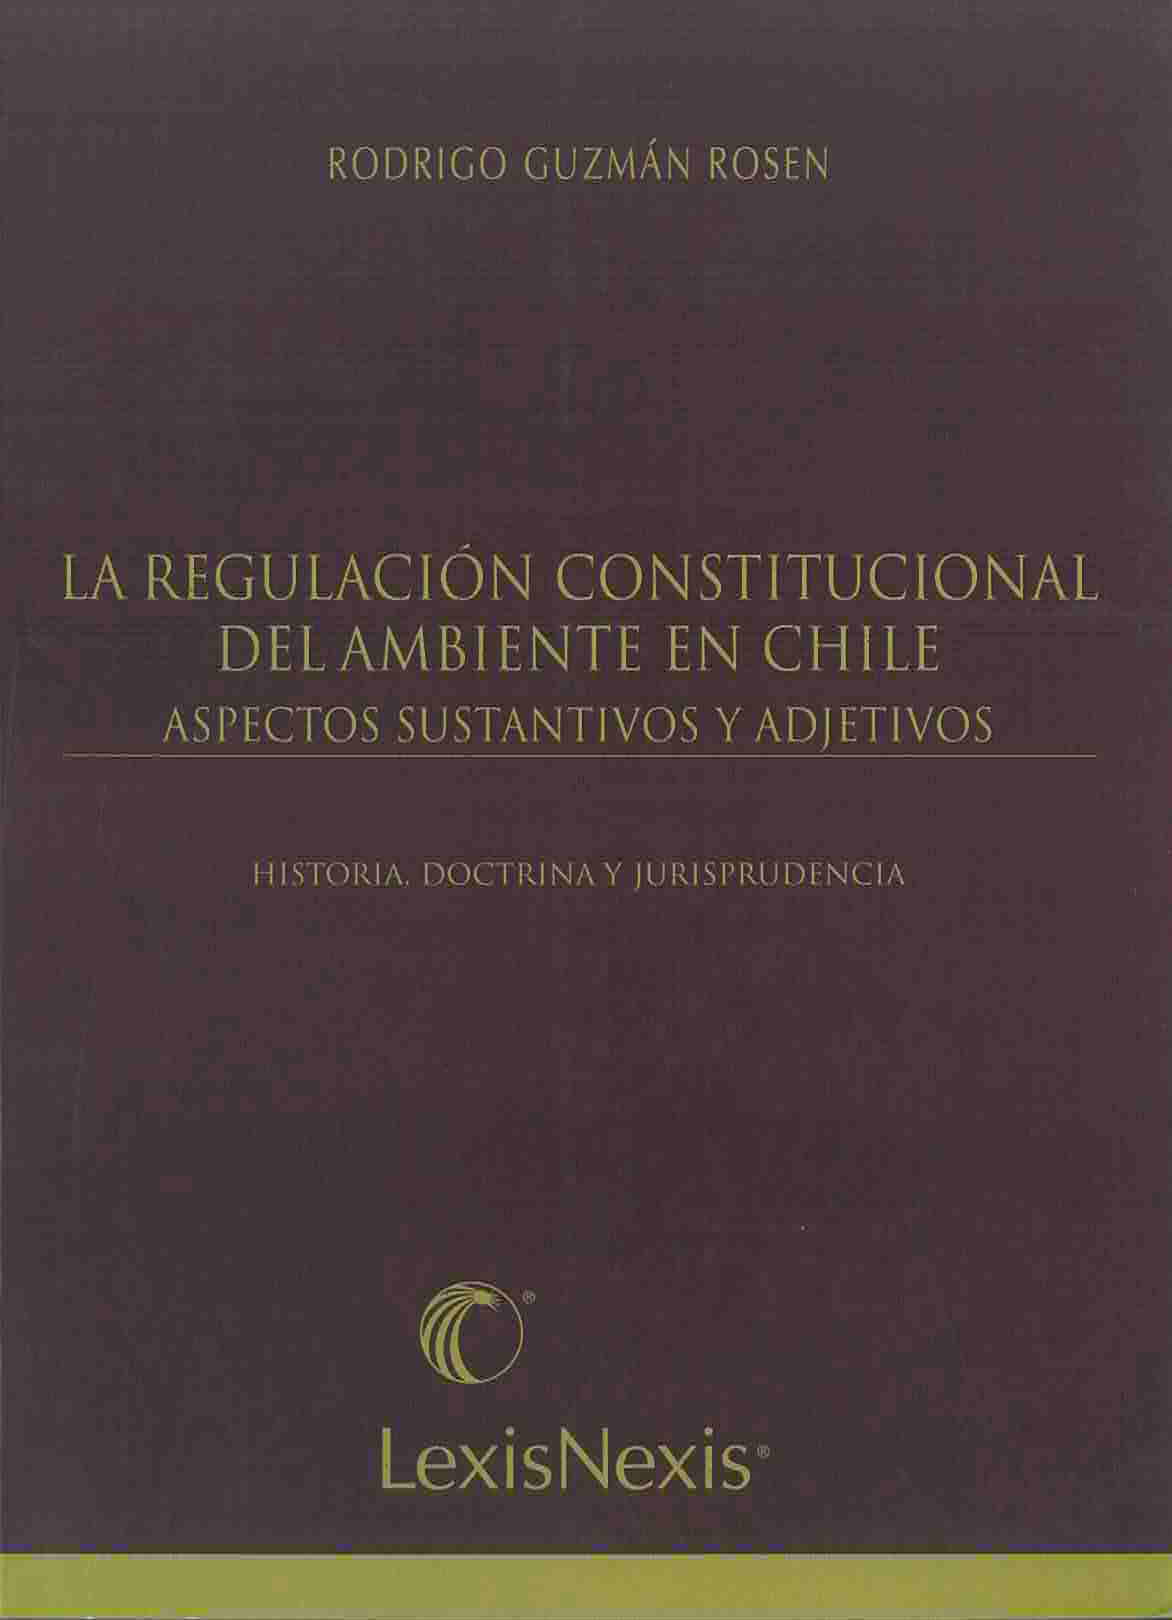 La regulación constitucional del ambiente en Chile, aspectos sustantivos y adjetivos. Historia, doctrina y jurisprudencia